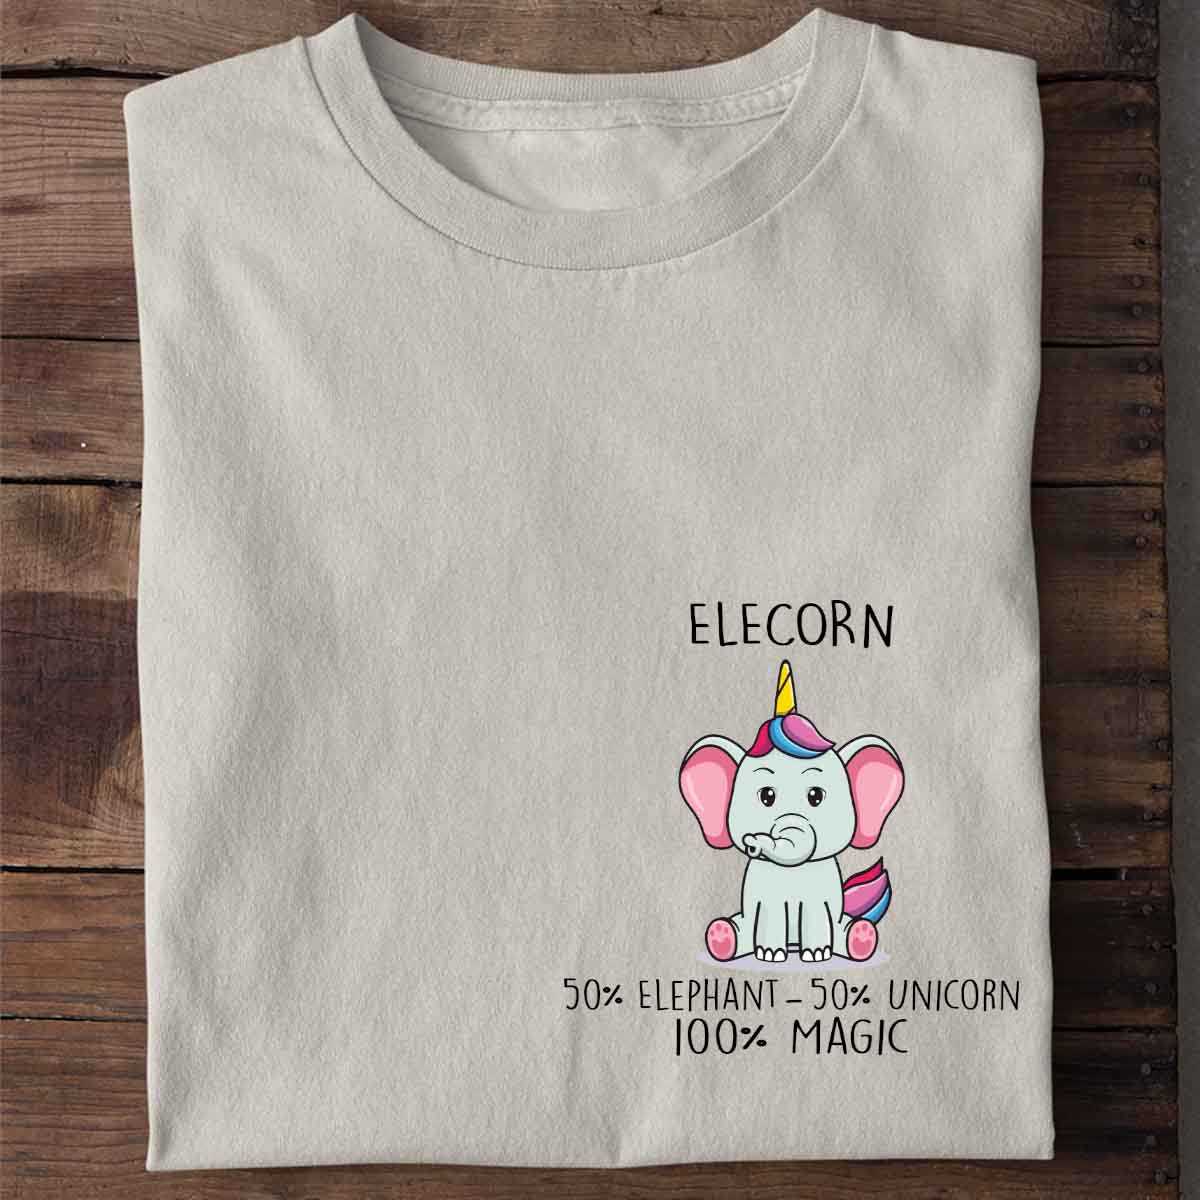 Elecorn Elephant - Shirt Unisex Chest